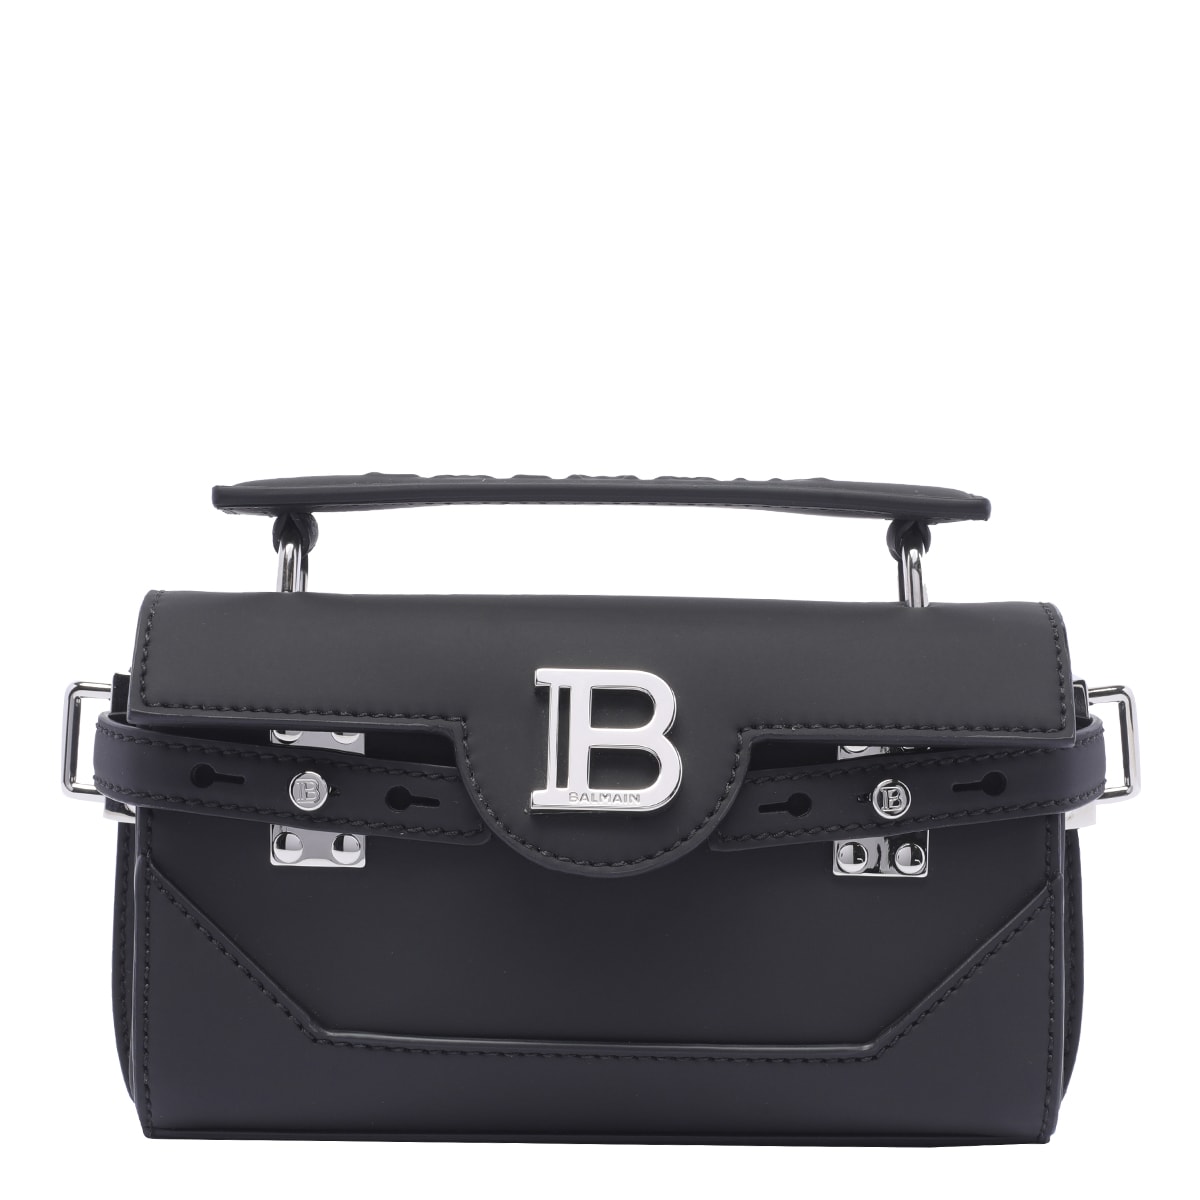 B-buzz 19 Hand Bag